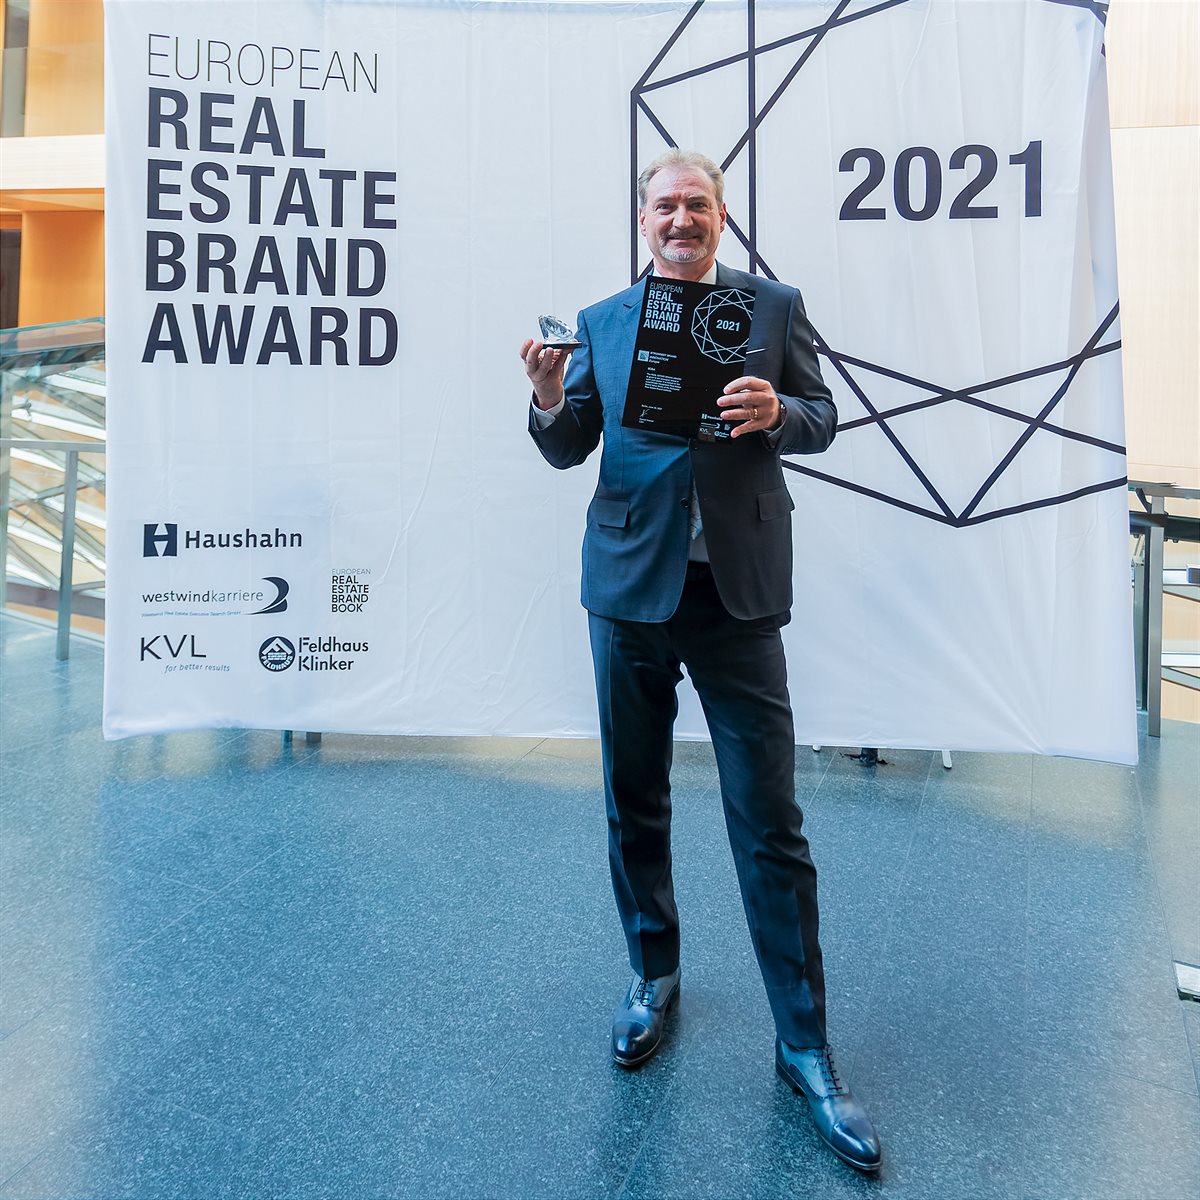  Innovationskraft: SÜBA erhält Auszeichnung für stärkste Markenentwicklung